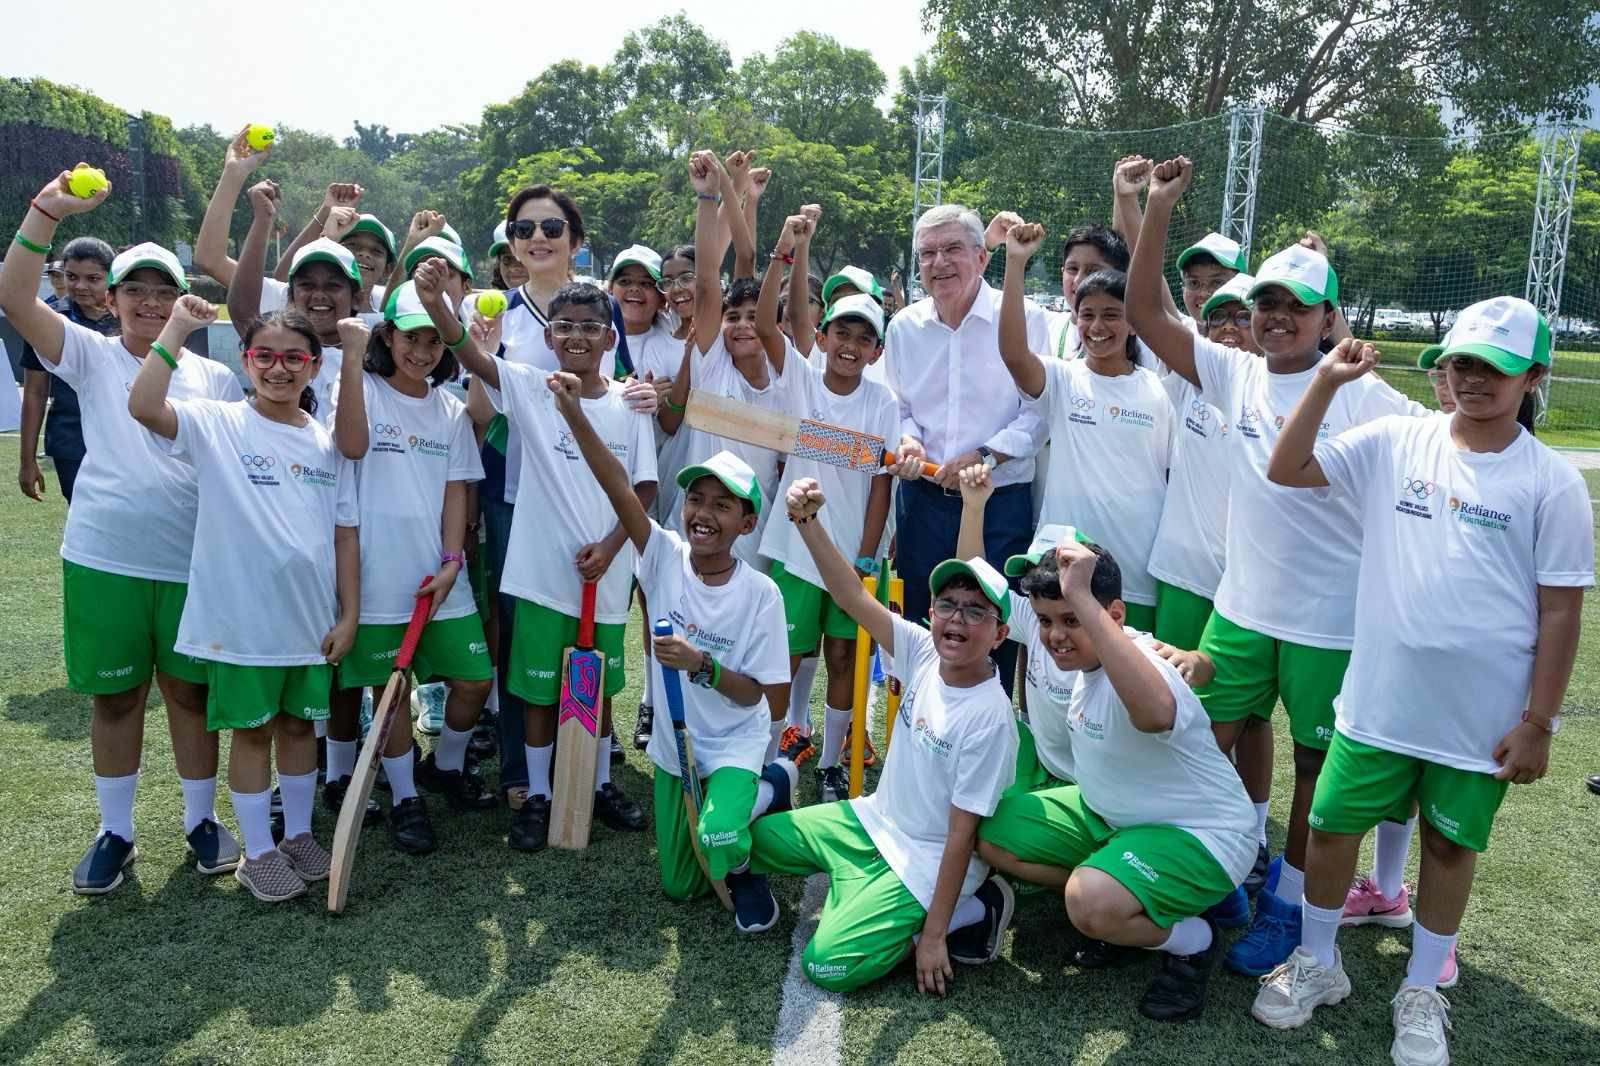 क्रिकेट 1.4 अरब भारतीयों के लिए सिर्फ एक खेल नहीं है, एक धर्म है – नीता अंबानी